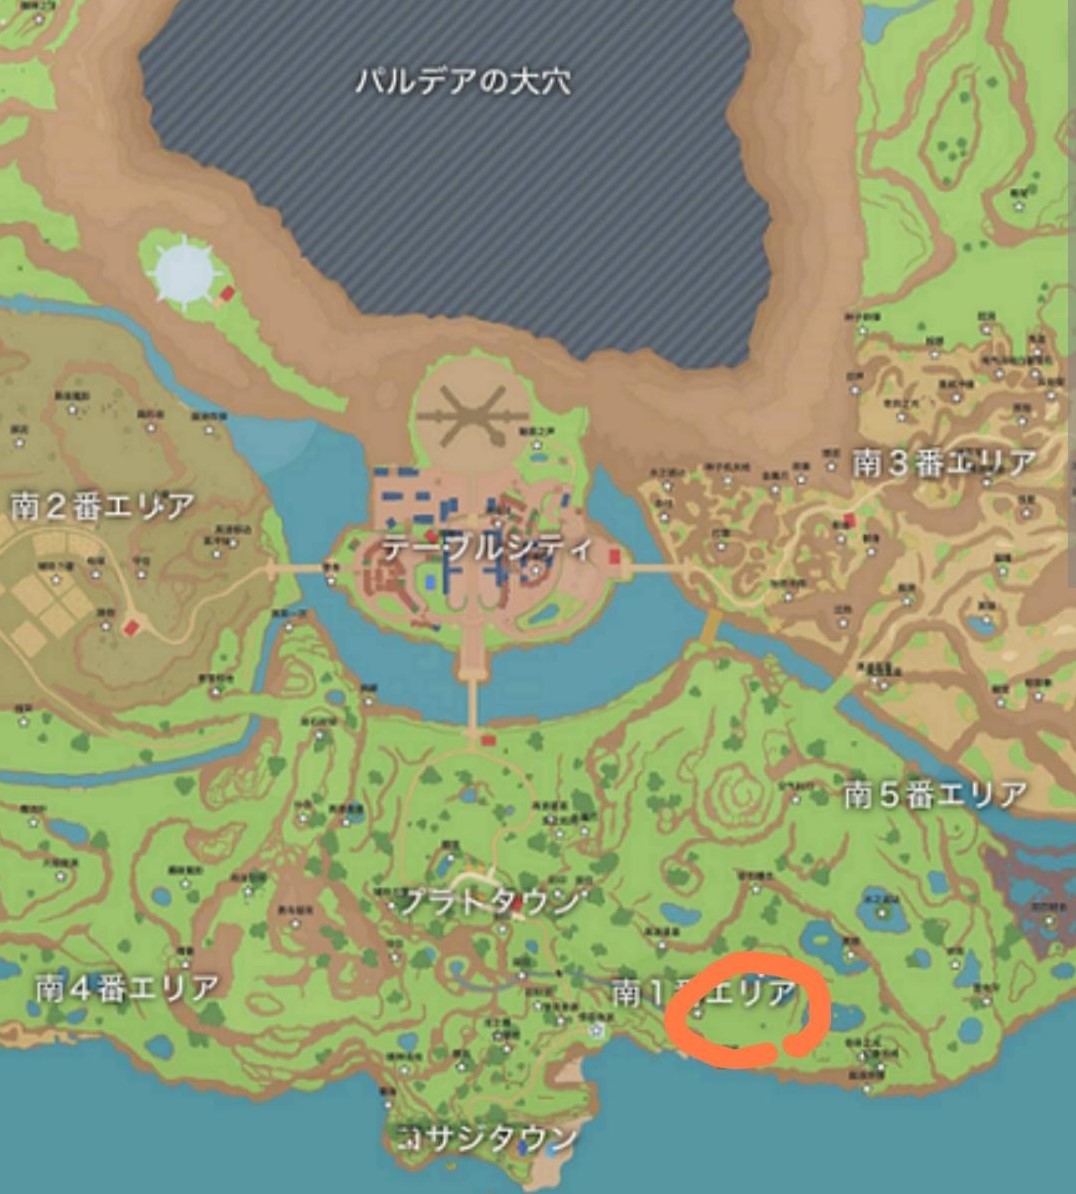 《寶可夢朱紫》地圖素材刷取指南